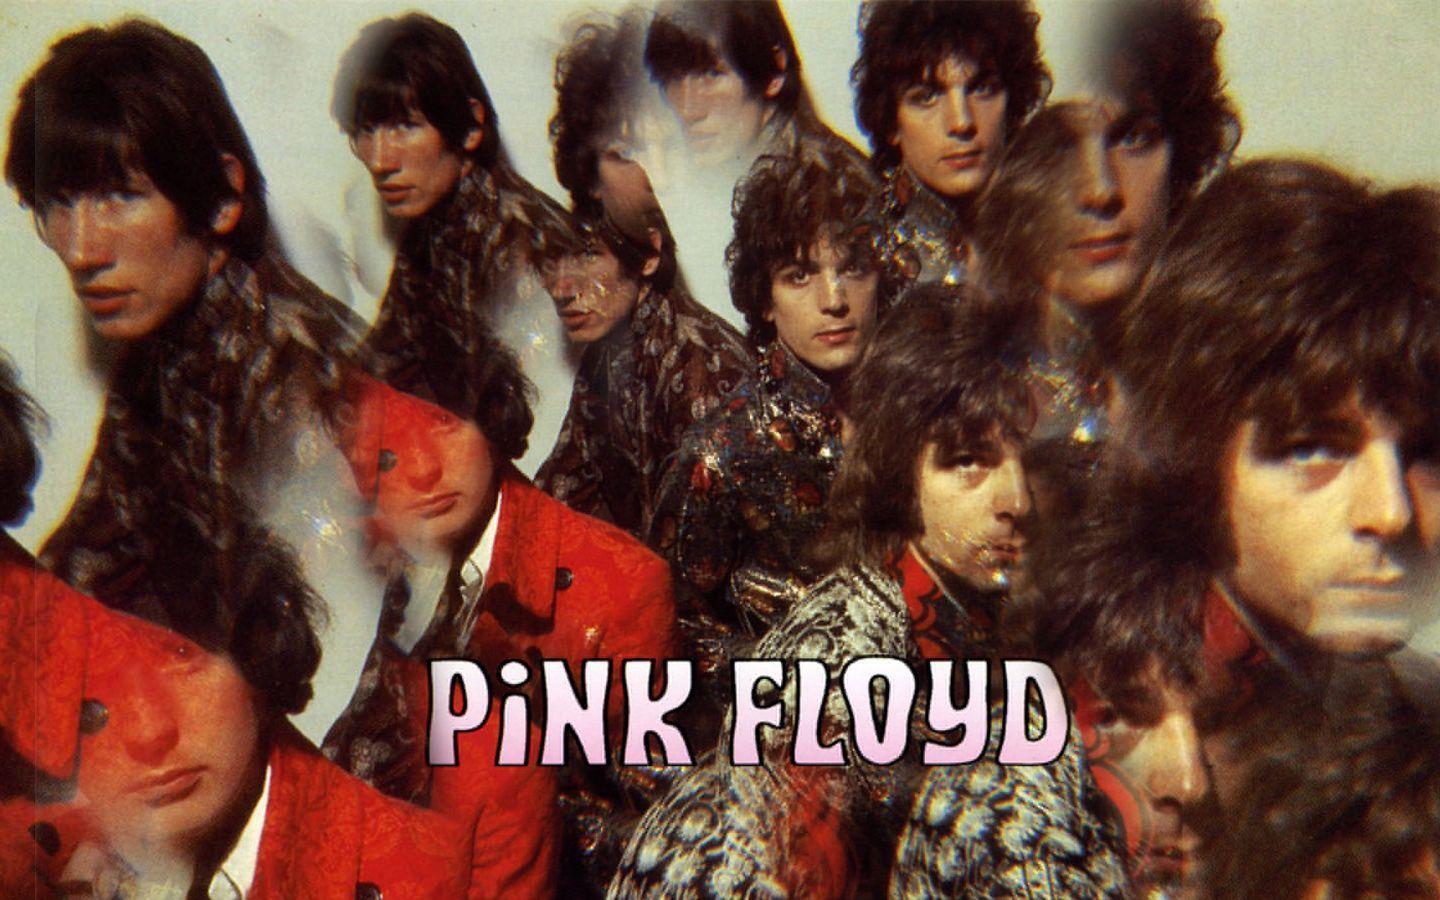 Free Old School Pink Floyd Wallpaper, Free Old School Pink Floyd